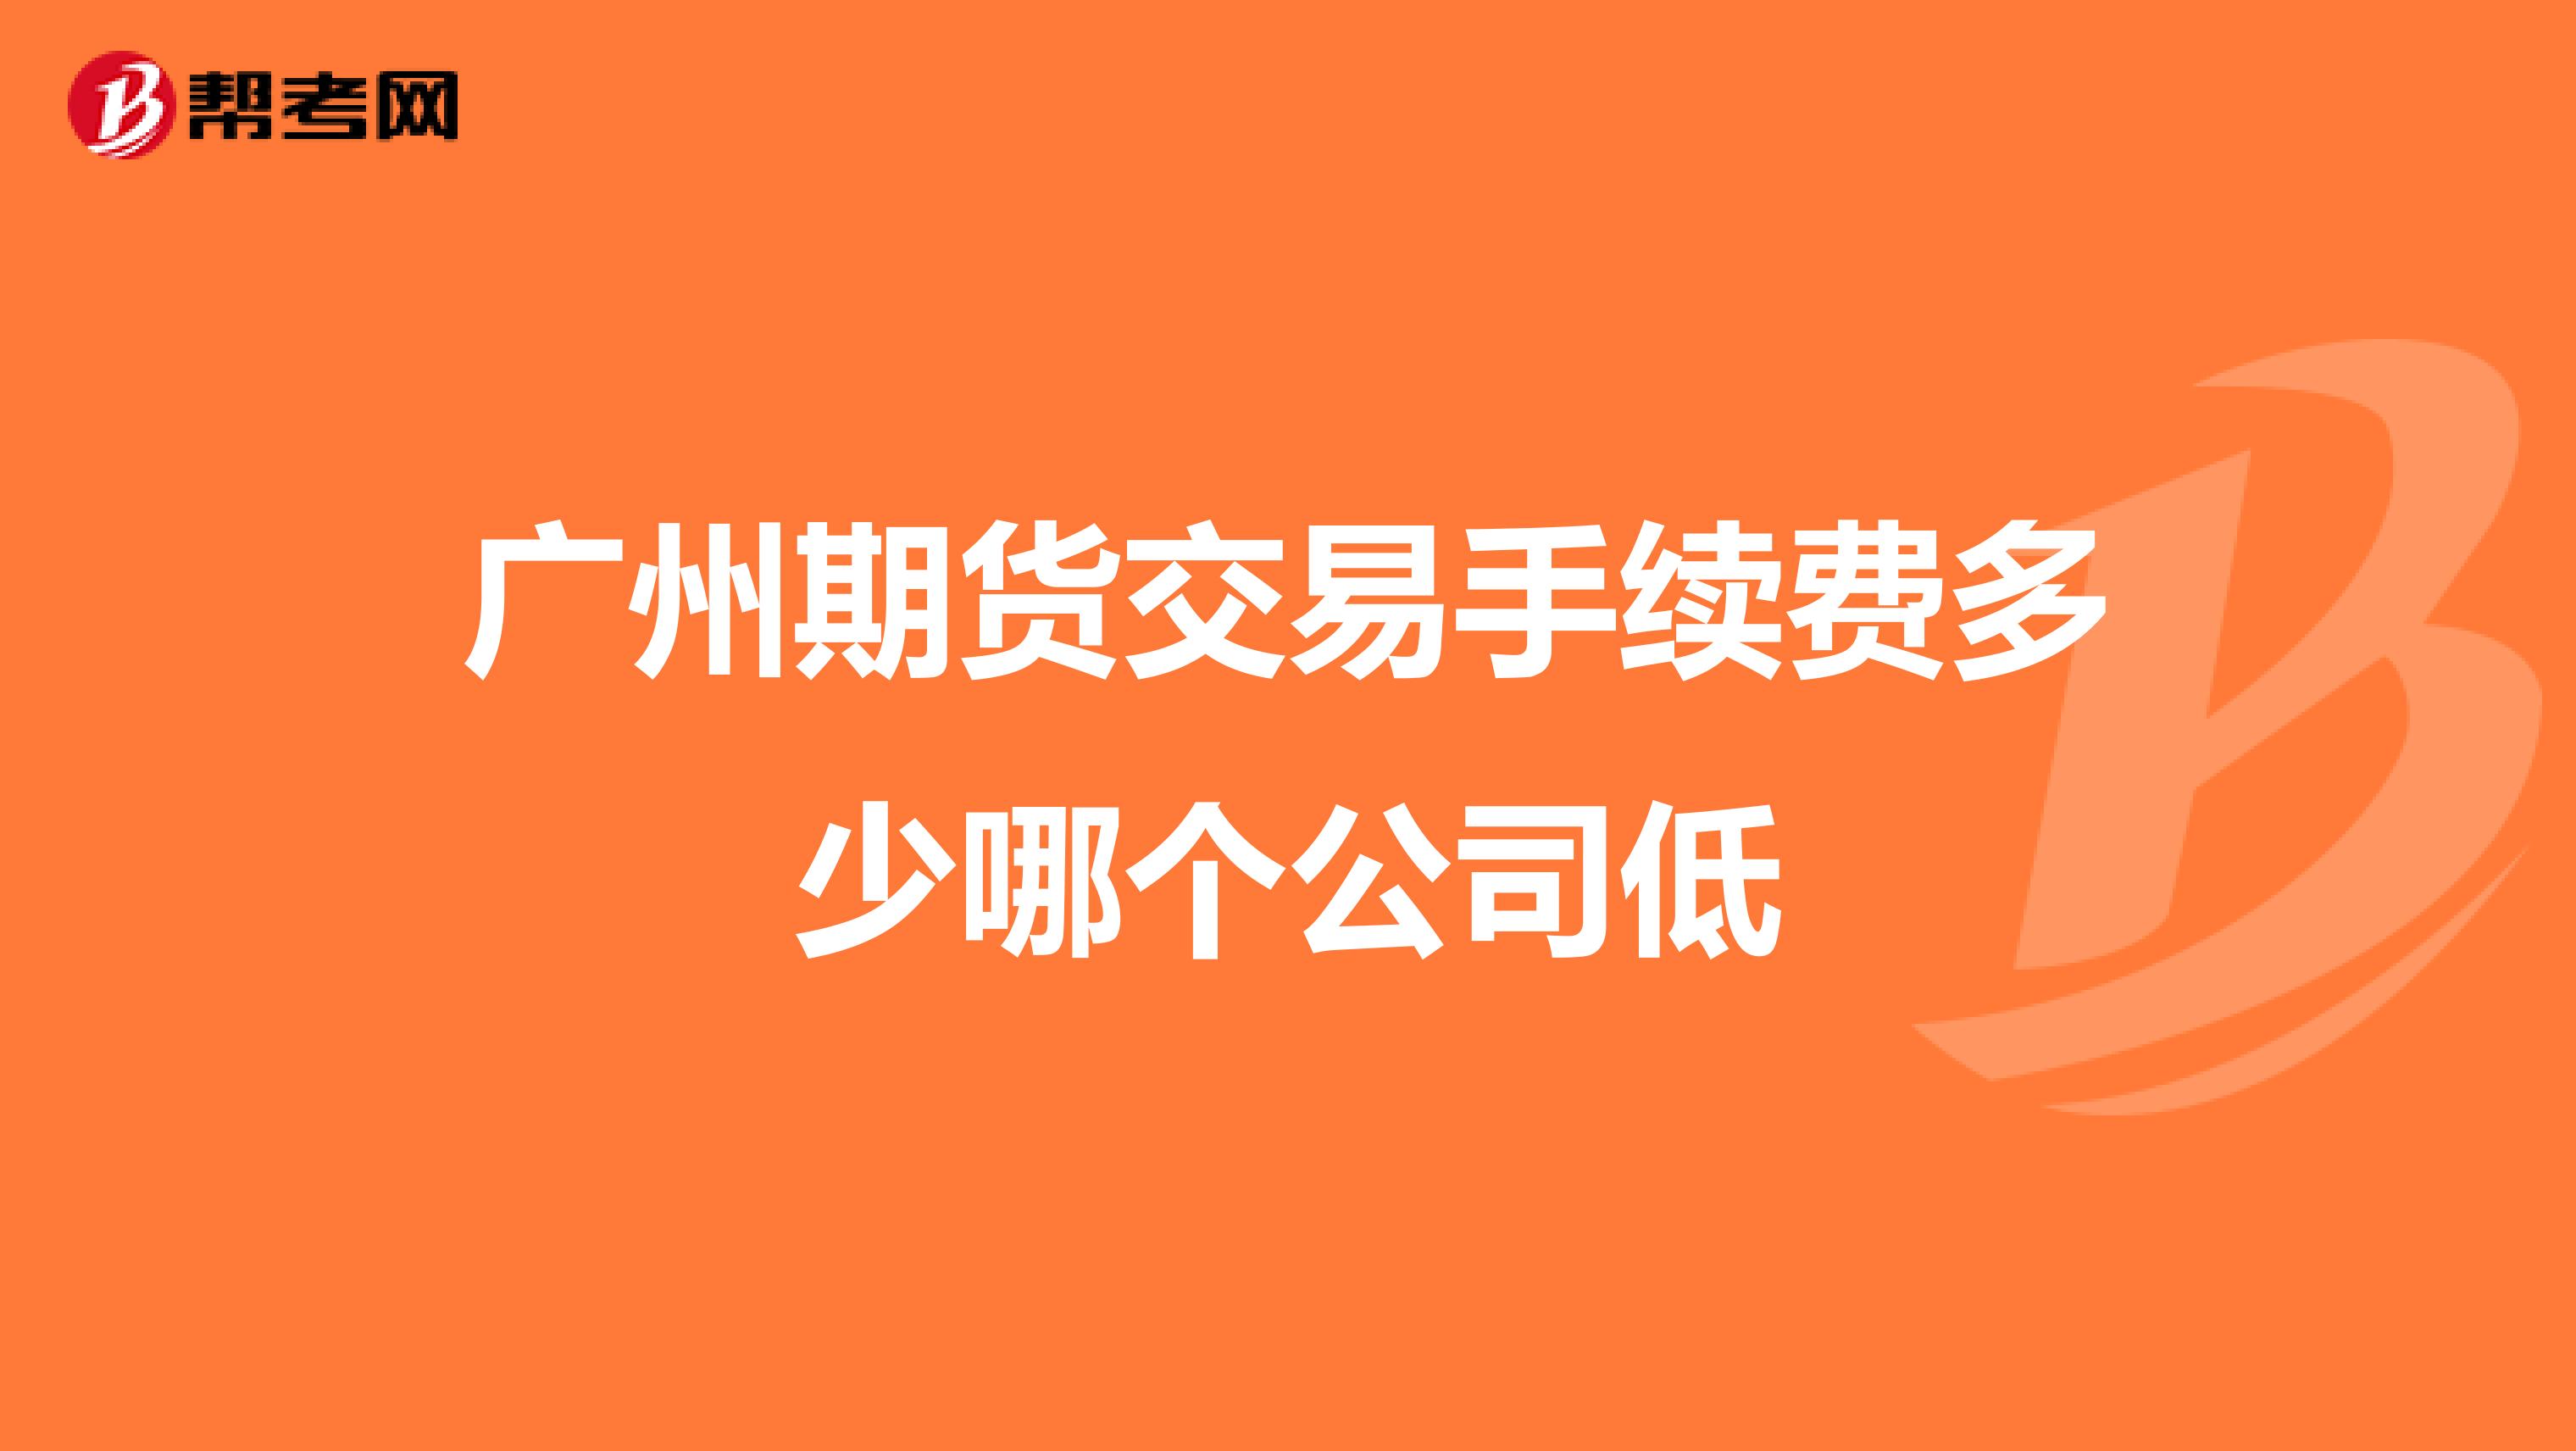 广州美莱客服满意度调查_广州市长陈建华被调查_广州调查